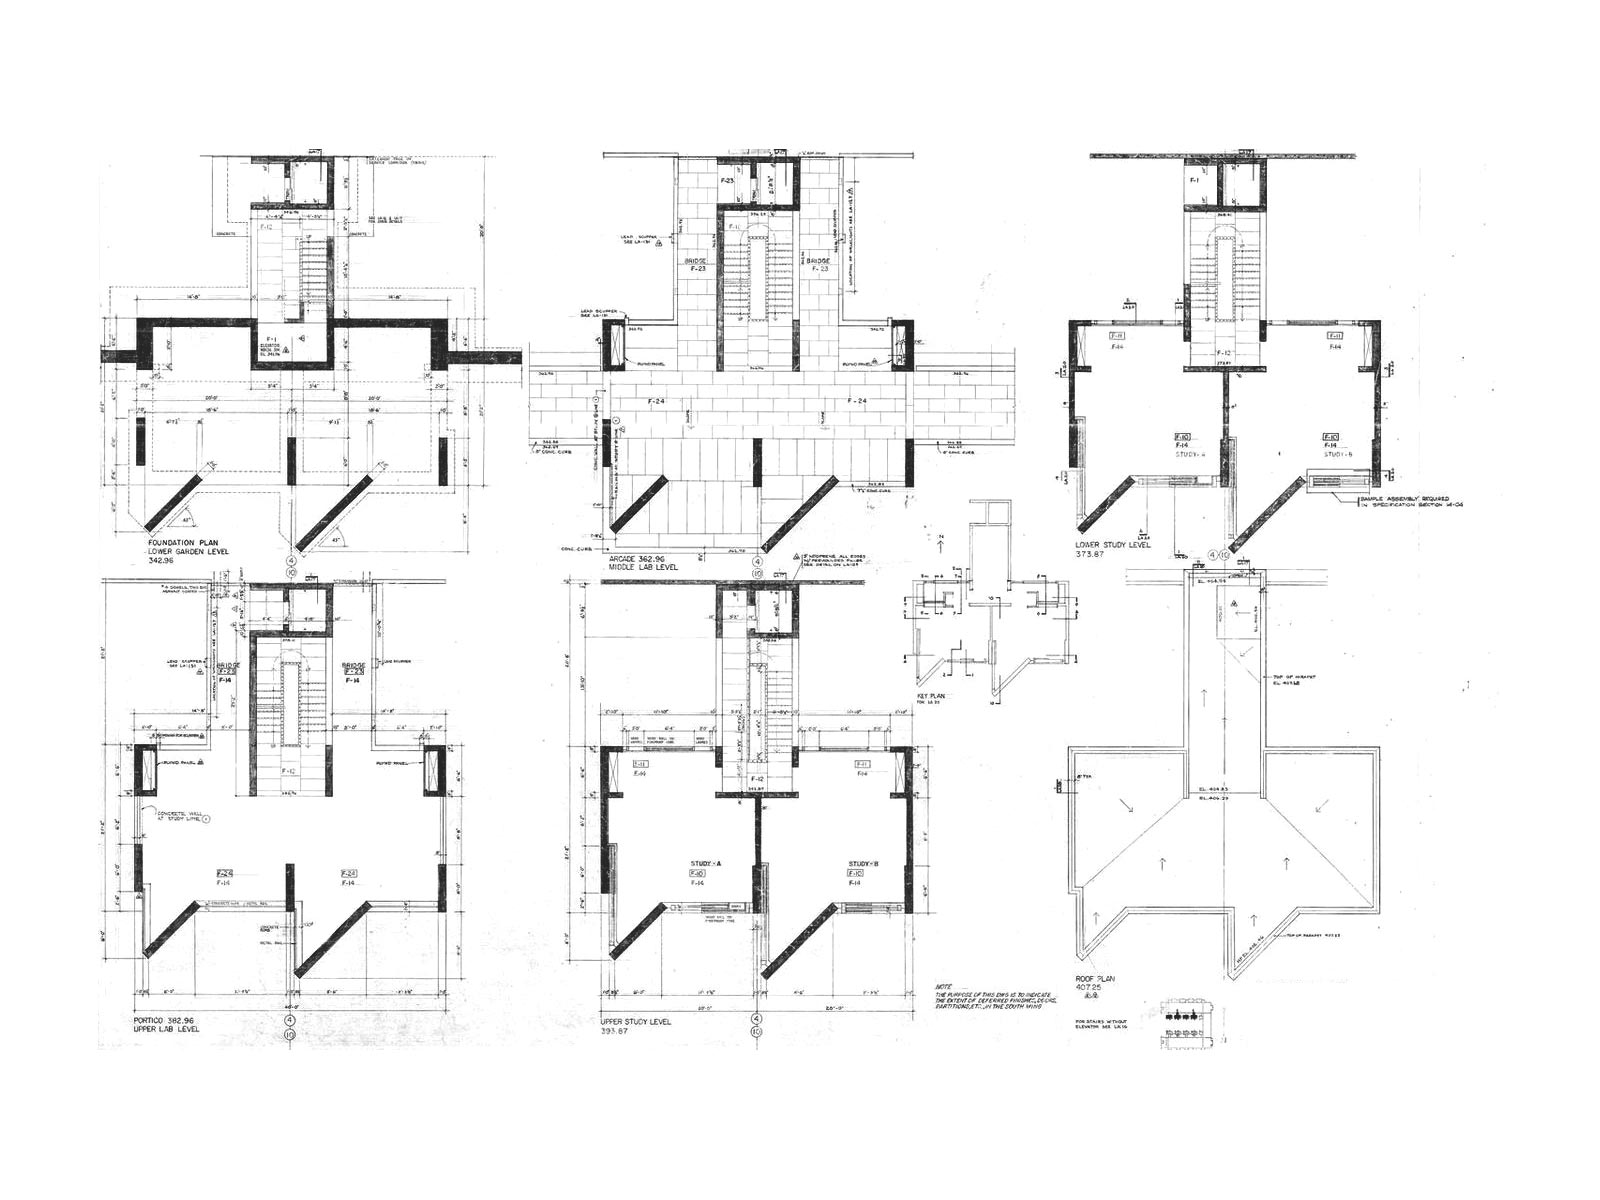 Salk Institute-Louis Kahn – Modern Architecture: A Visual Lexicon